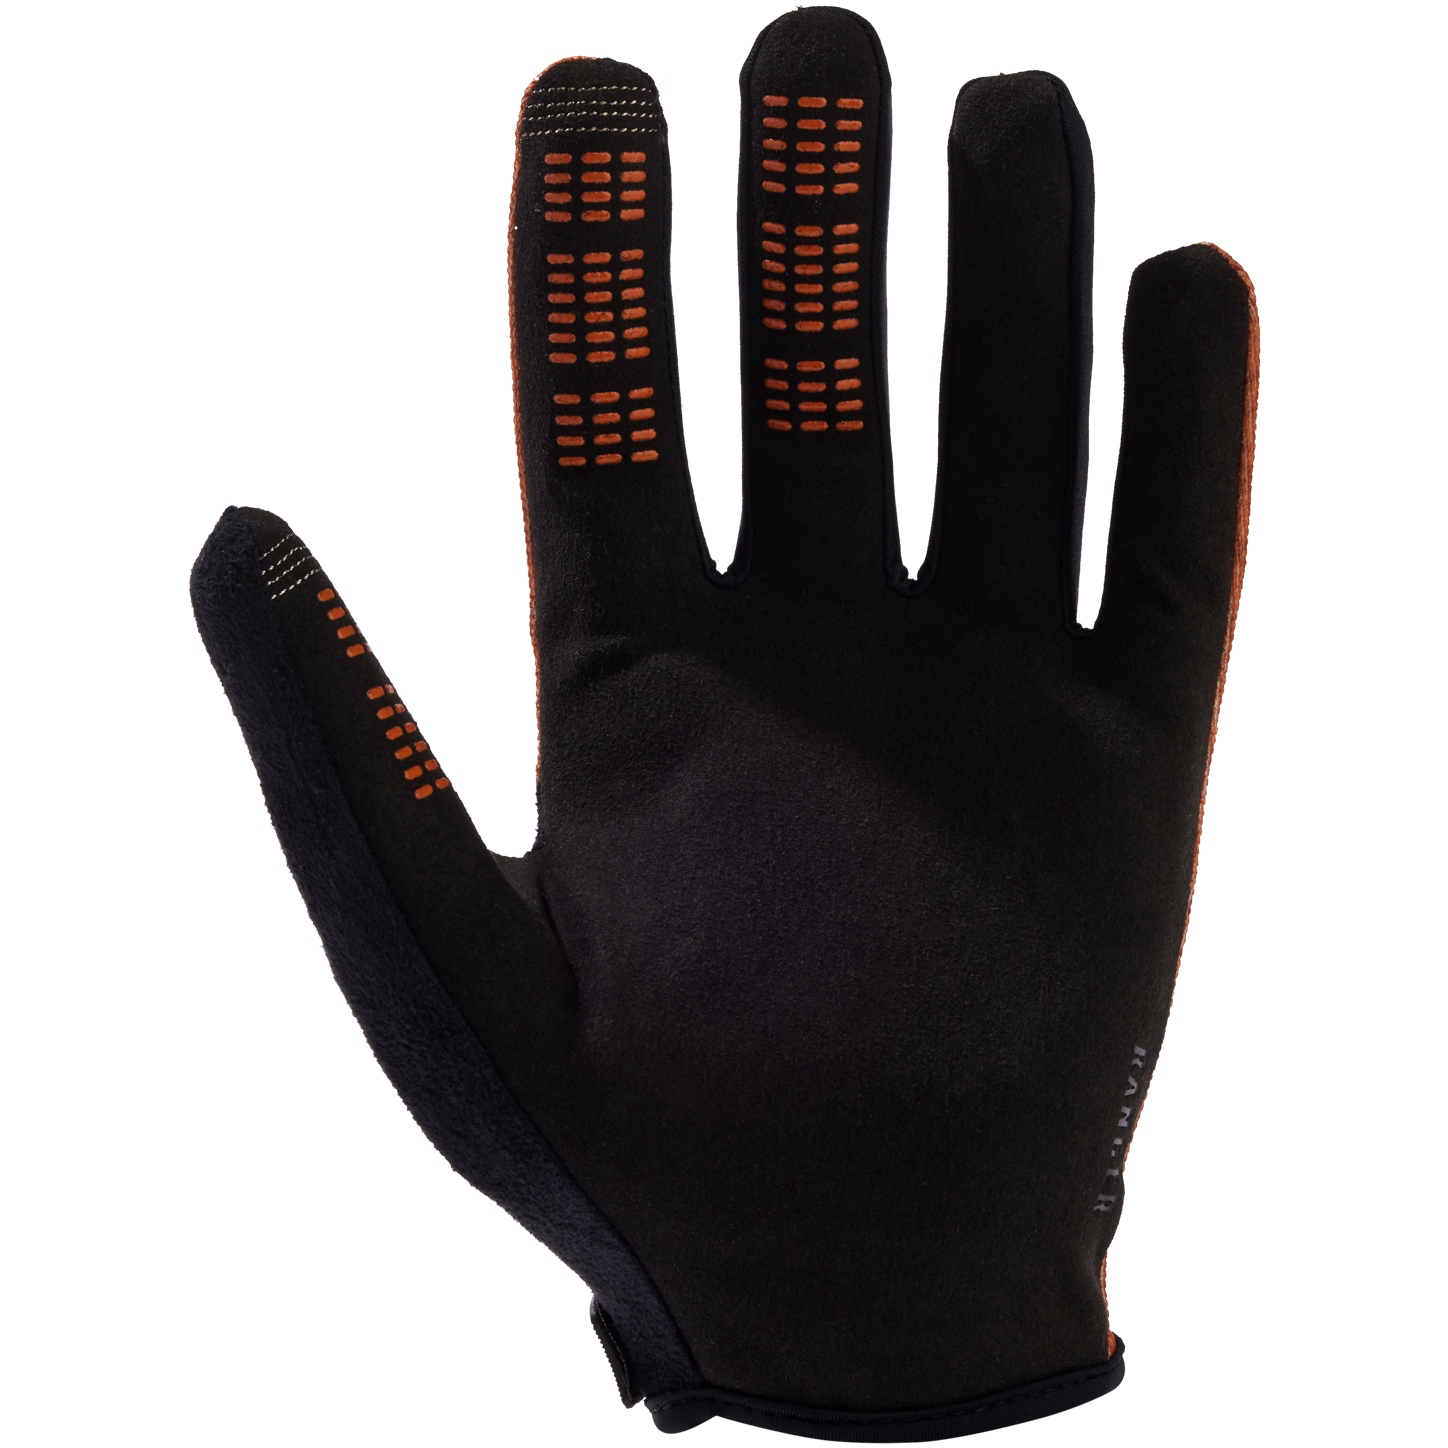 https://images.bike24.com/i/mb/6c/03/47/fox-ranger-mtb-gloves-emerson-burnt-orange-2-1546910.jpg